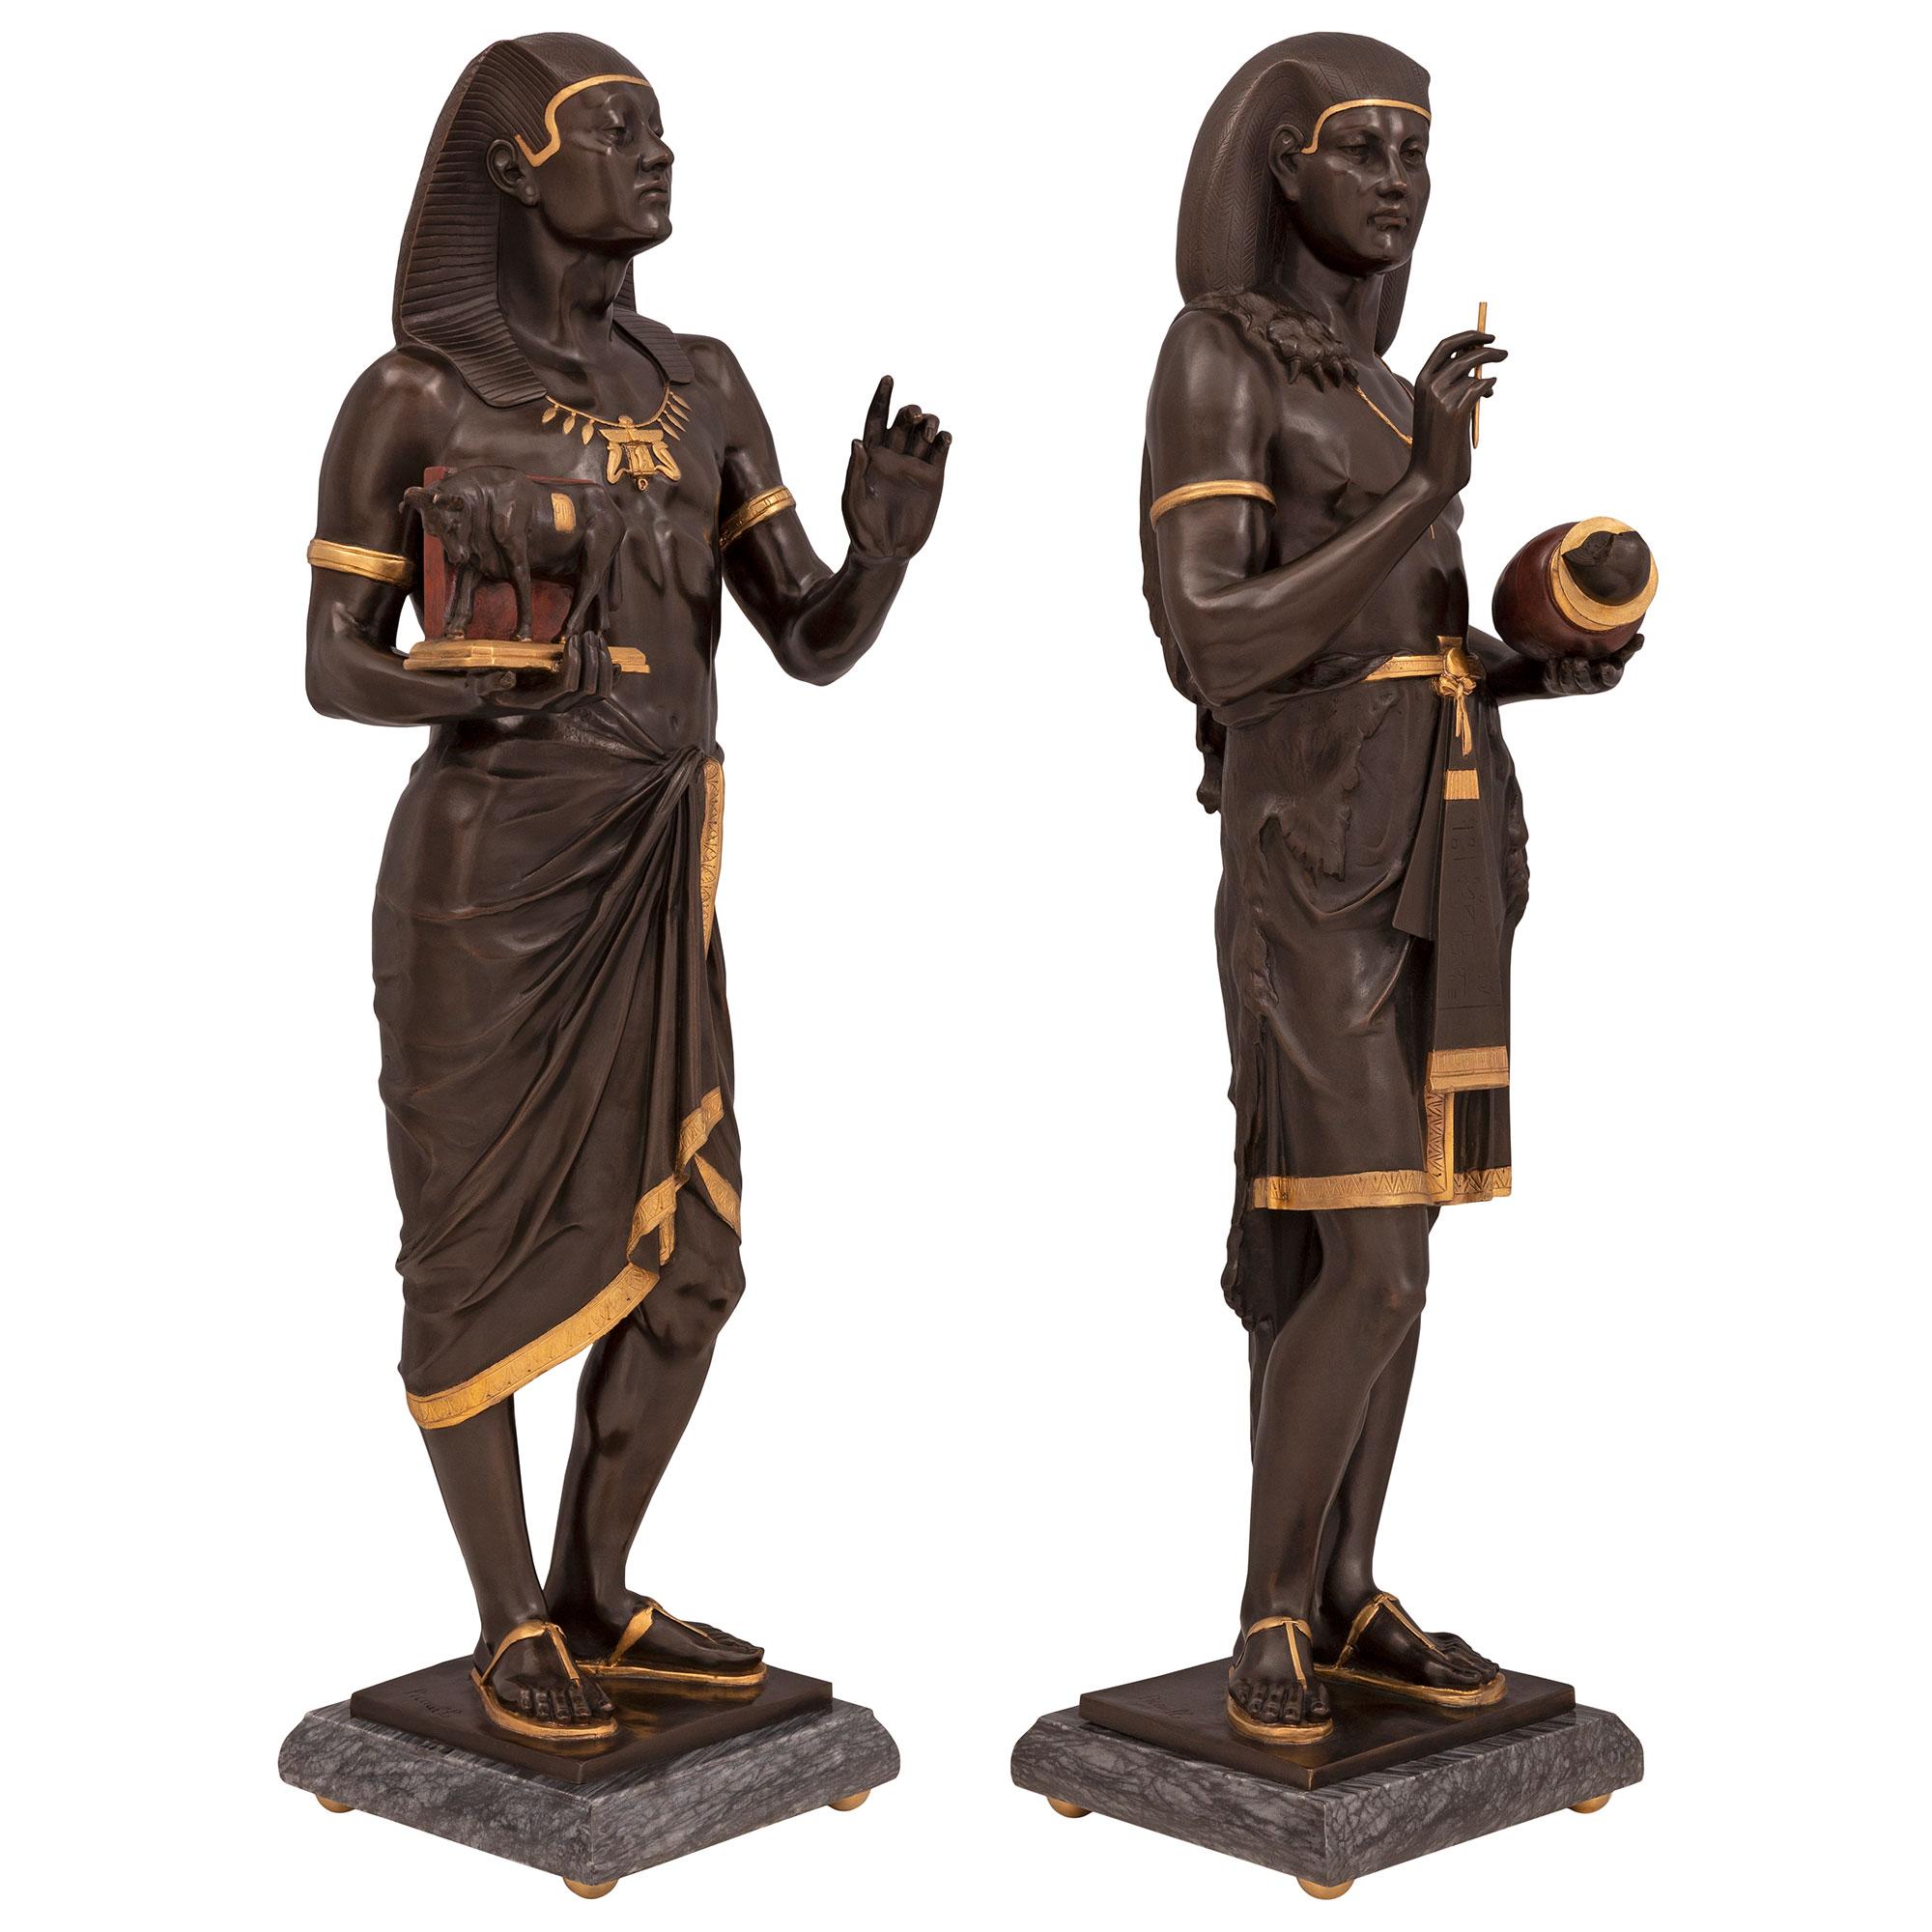 Une paire de statues néo-classiques de style néo-égyptien du 19ème siècle, de très grande qualité et très impressionnante. Néo-égyptien du XIXe siècle, en bronze patiné, bronze doré et marbre, signée PICAULT. Chaque statue est surélevée par une base